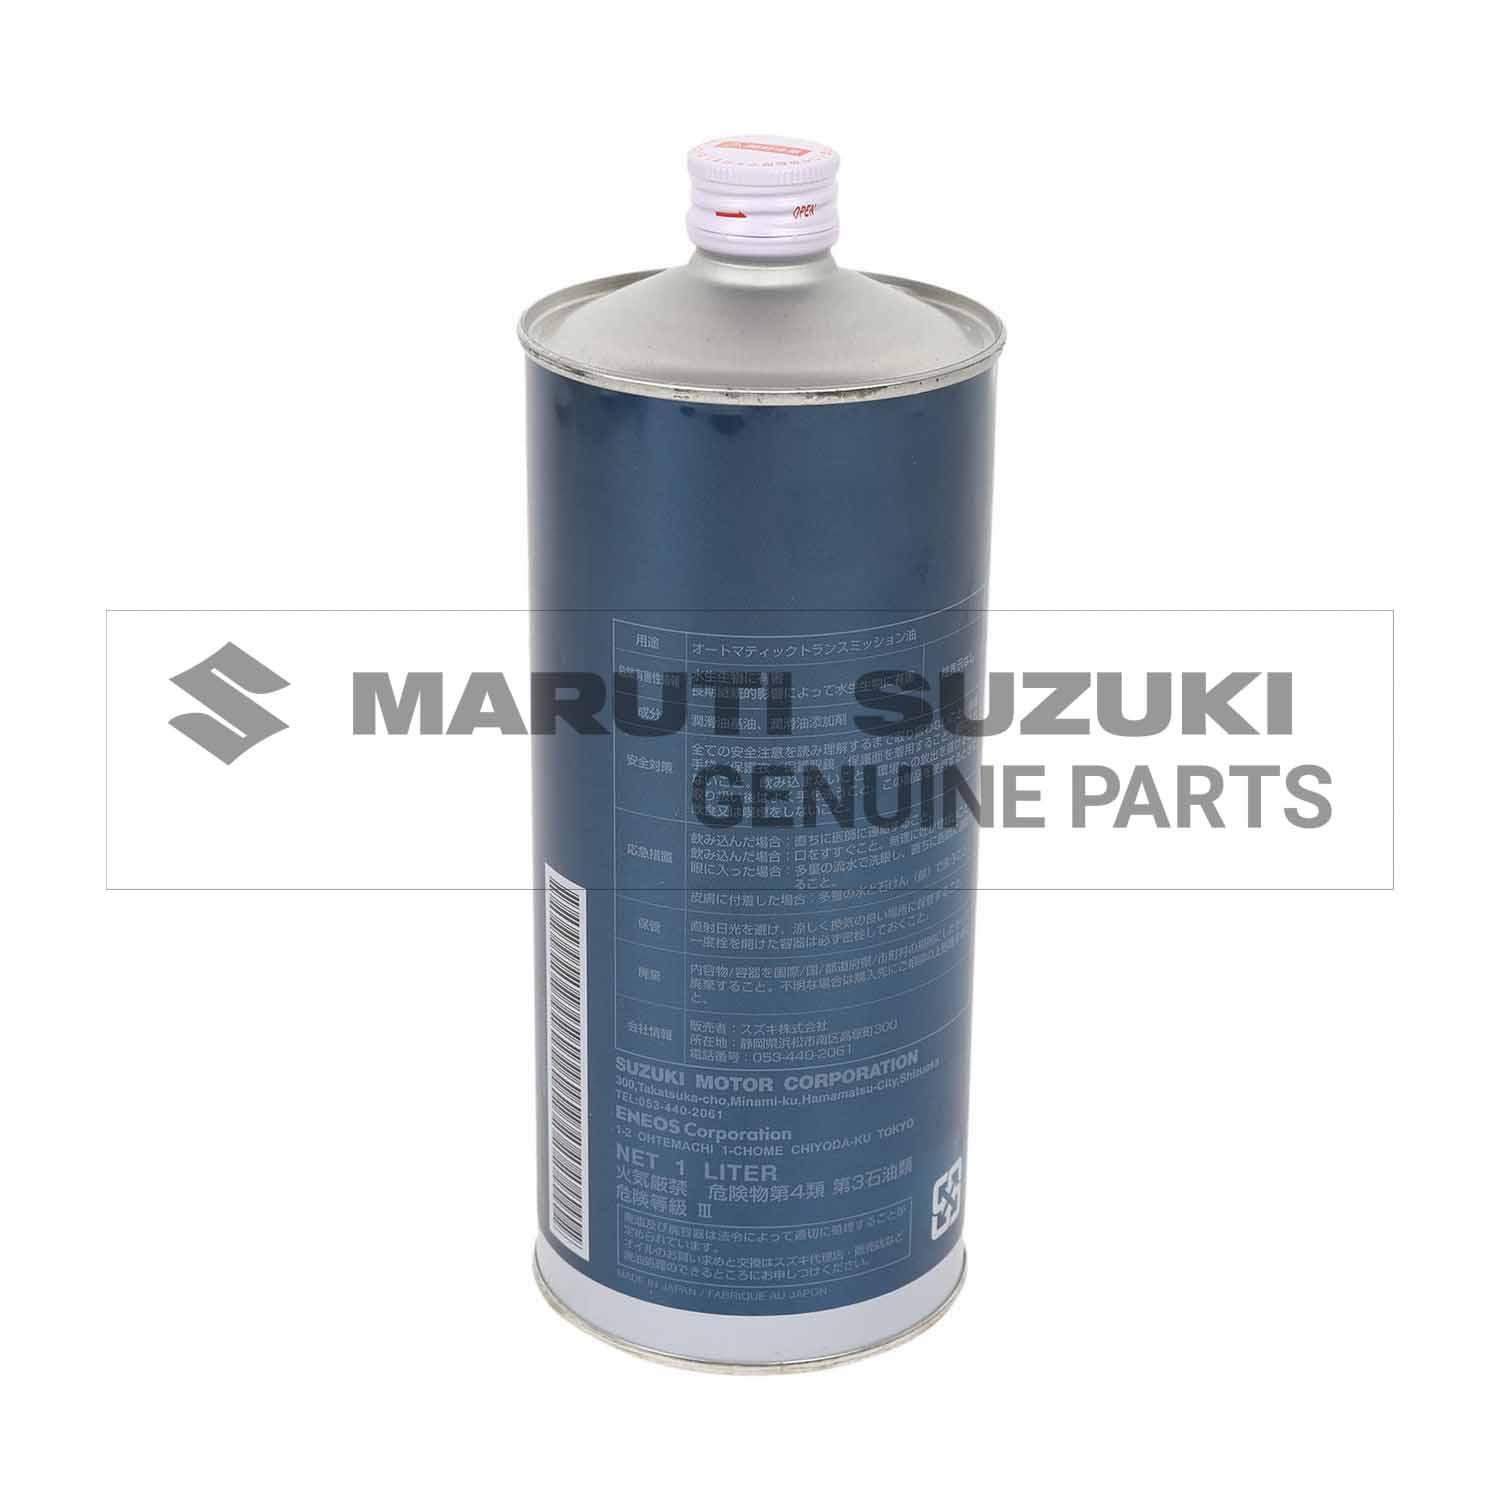 SUZUKI AT-OIL AW-1 (1 LTR)